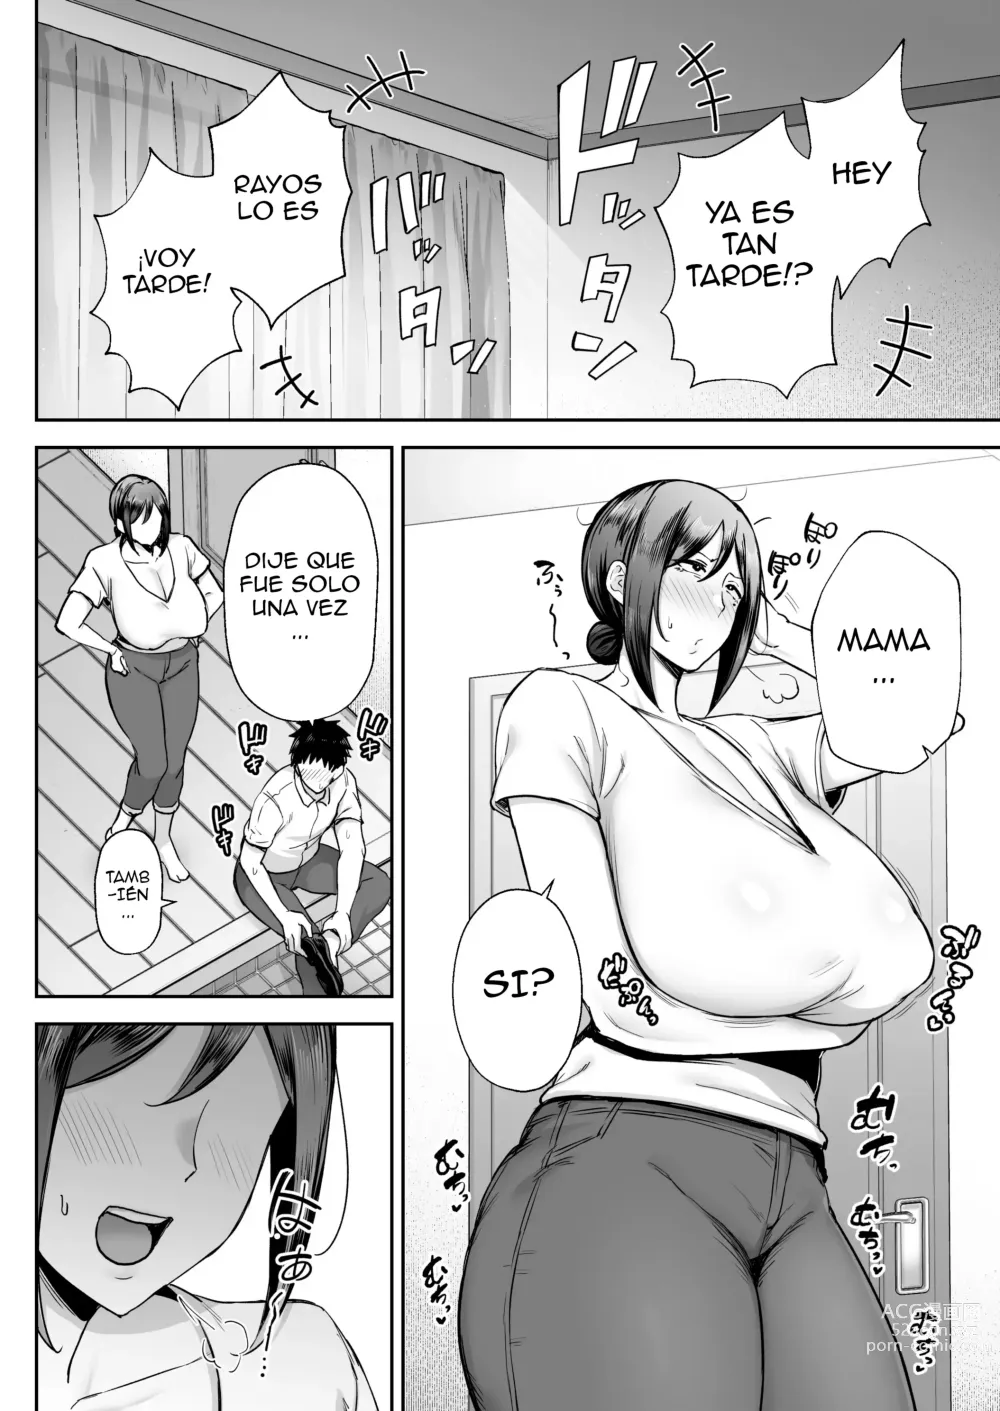 Page 45 of doujinshi La mujer más íntima y erótica, Miyuki. Soy madre, pero tengo problemas con mi hijo